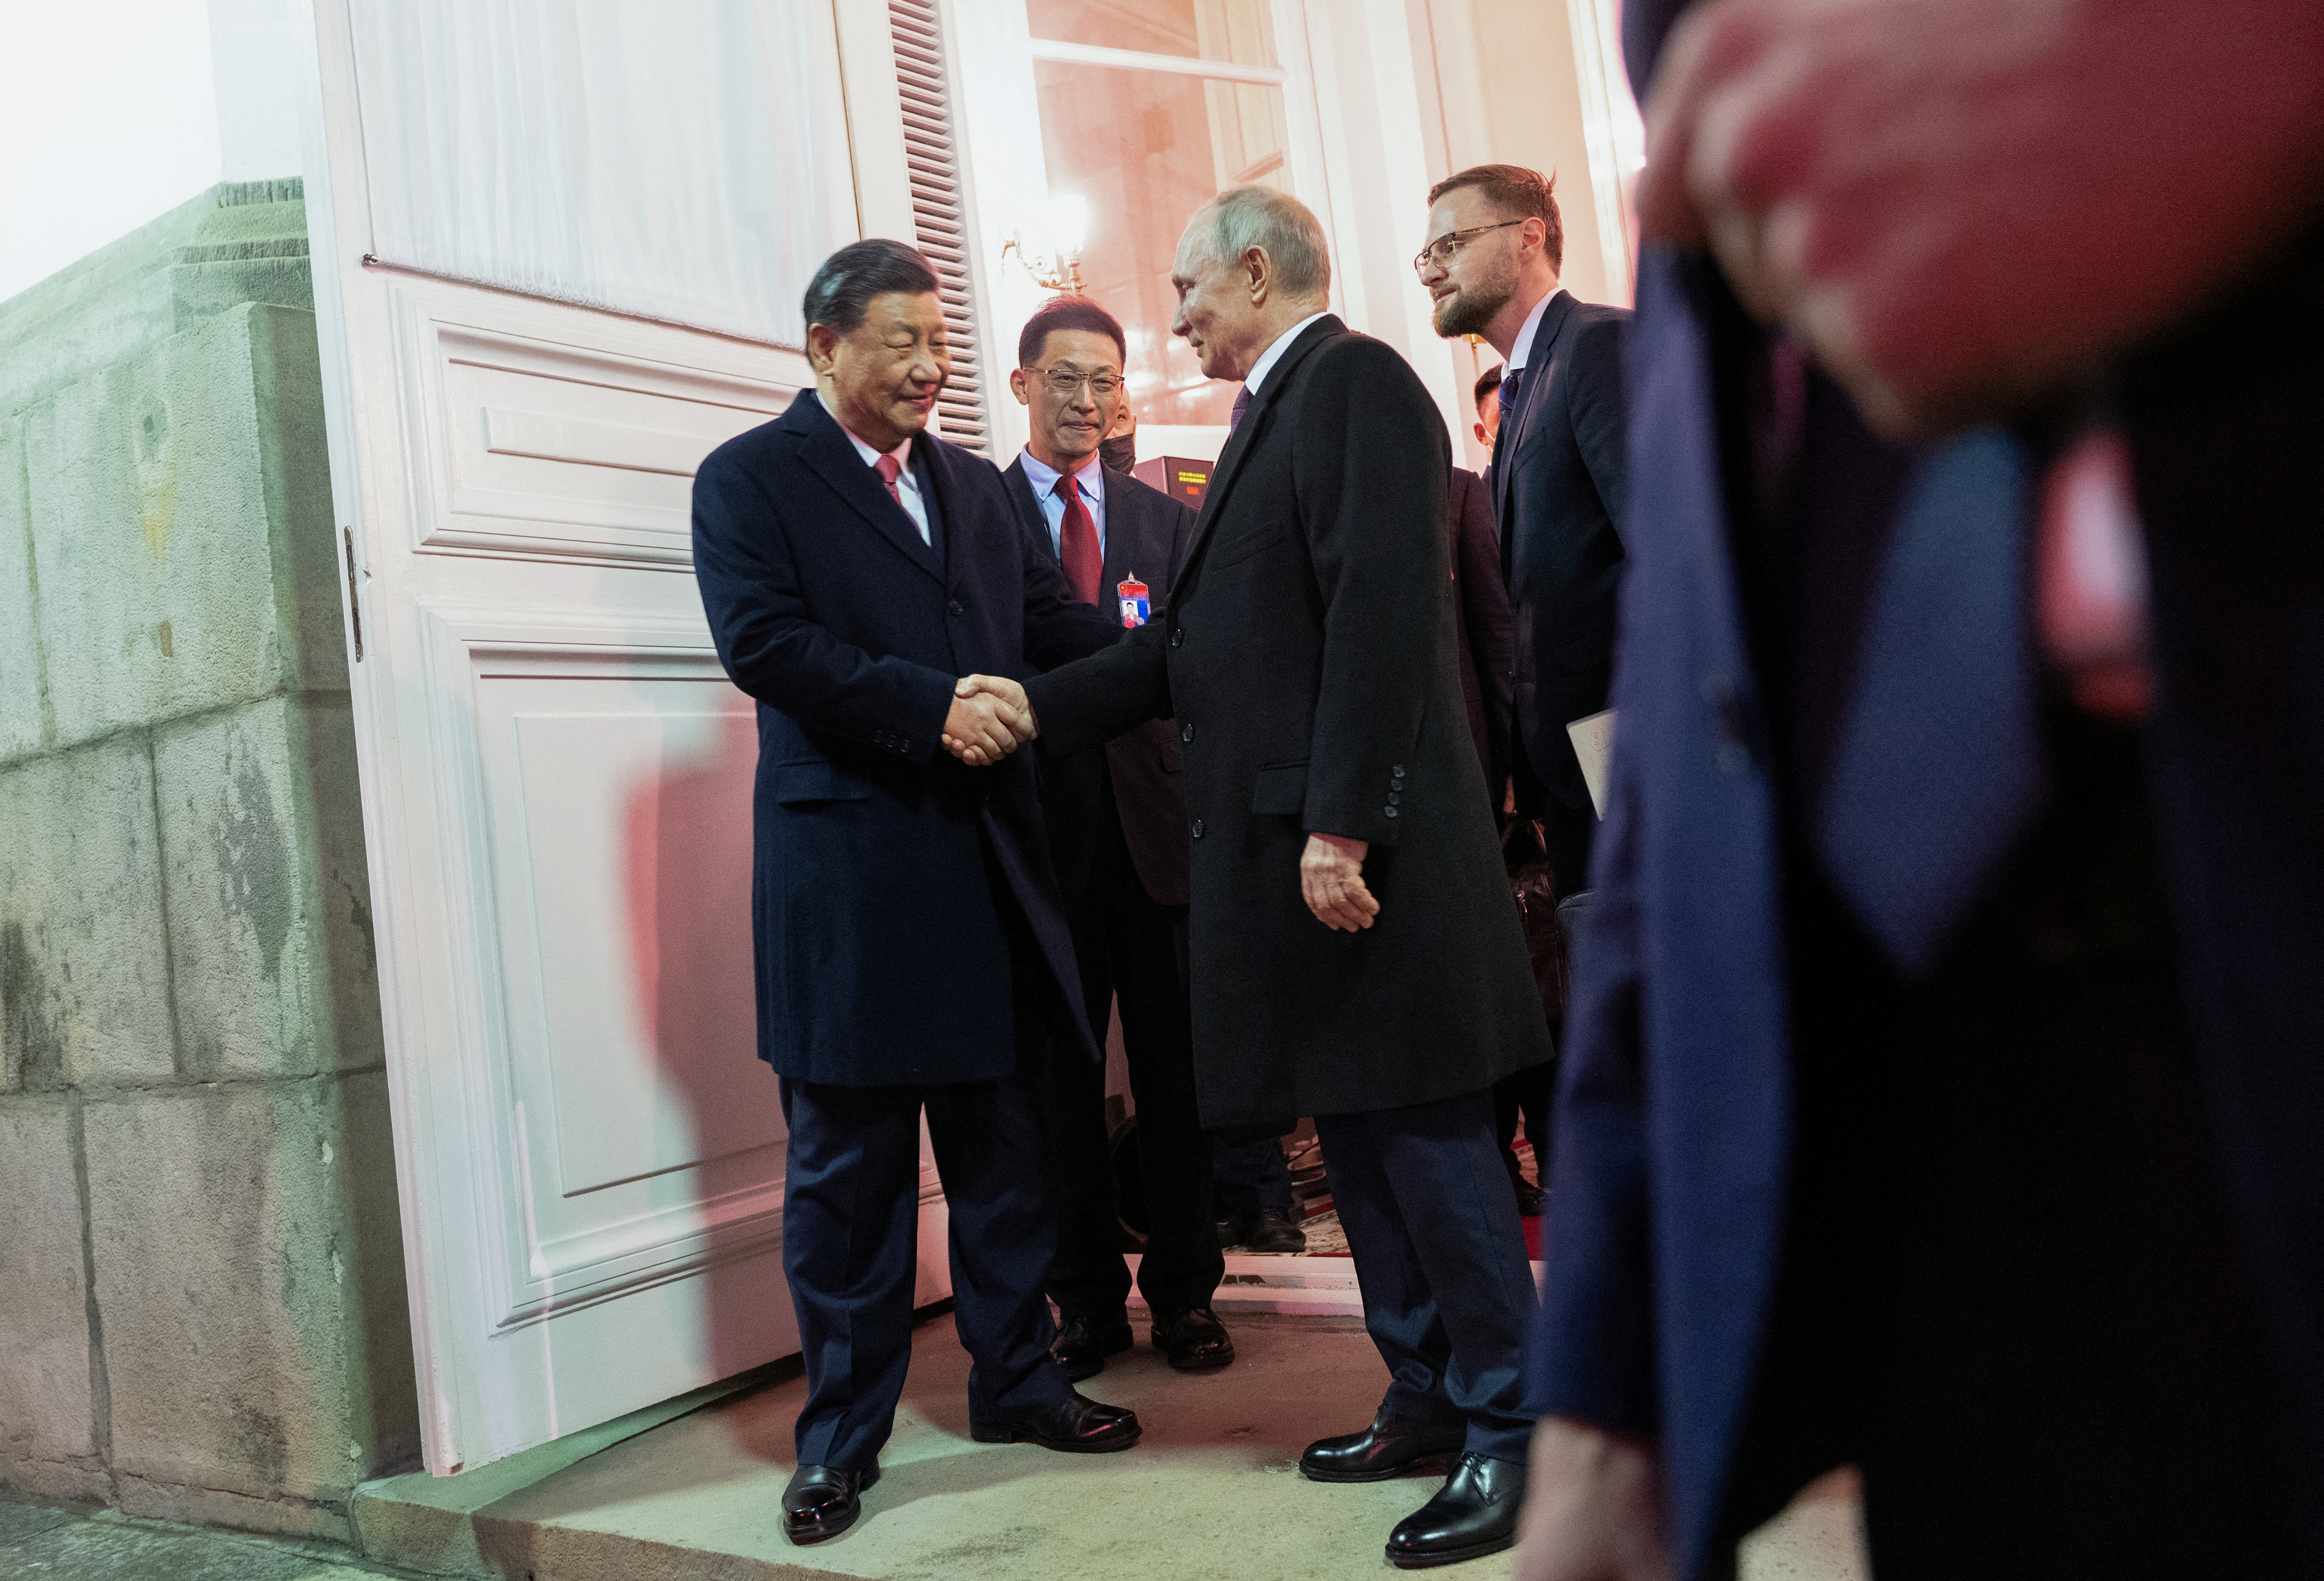 El presidente ruso, Vladímir Putin, se despide del presidente chino, Xi Jinping, tras una recepción en honor de la visita del líder chino a Moscú (Sputnik/Pavel Byrkin/Kremlin via REUTERS)